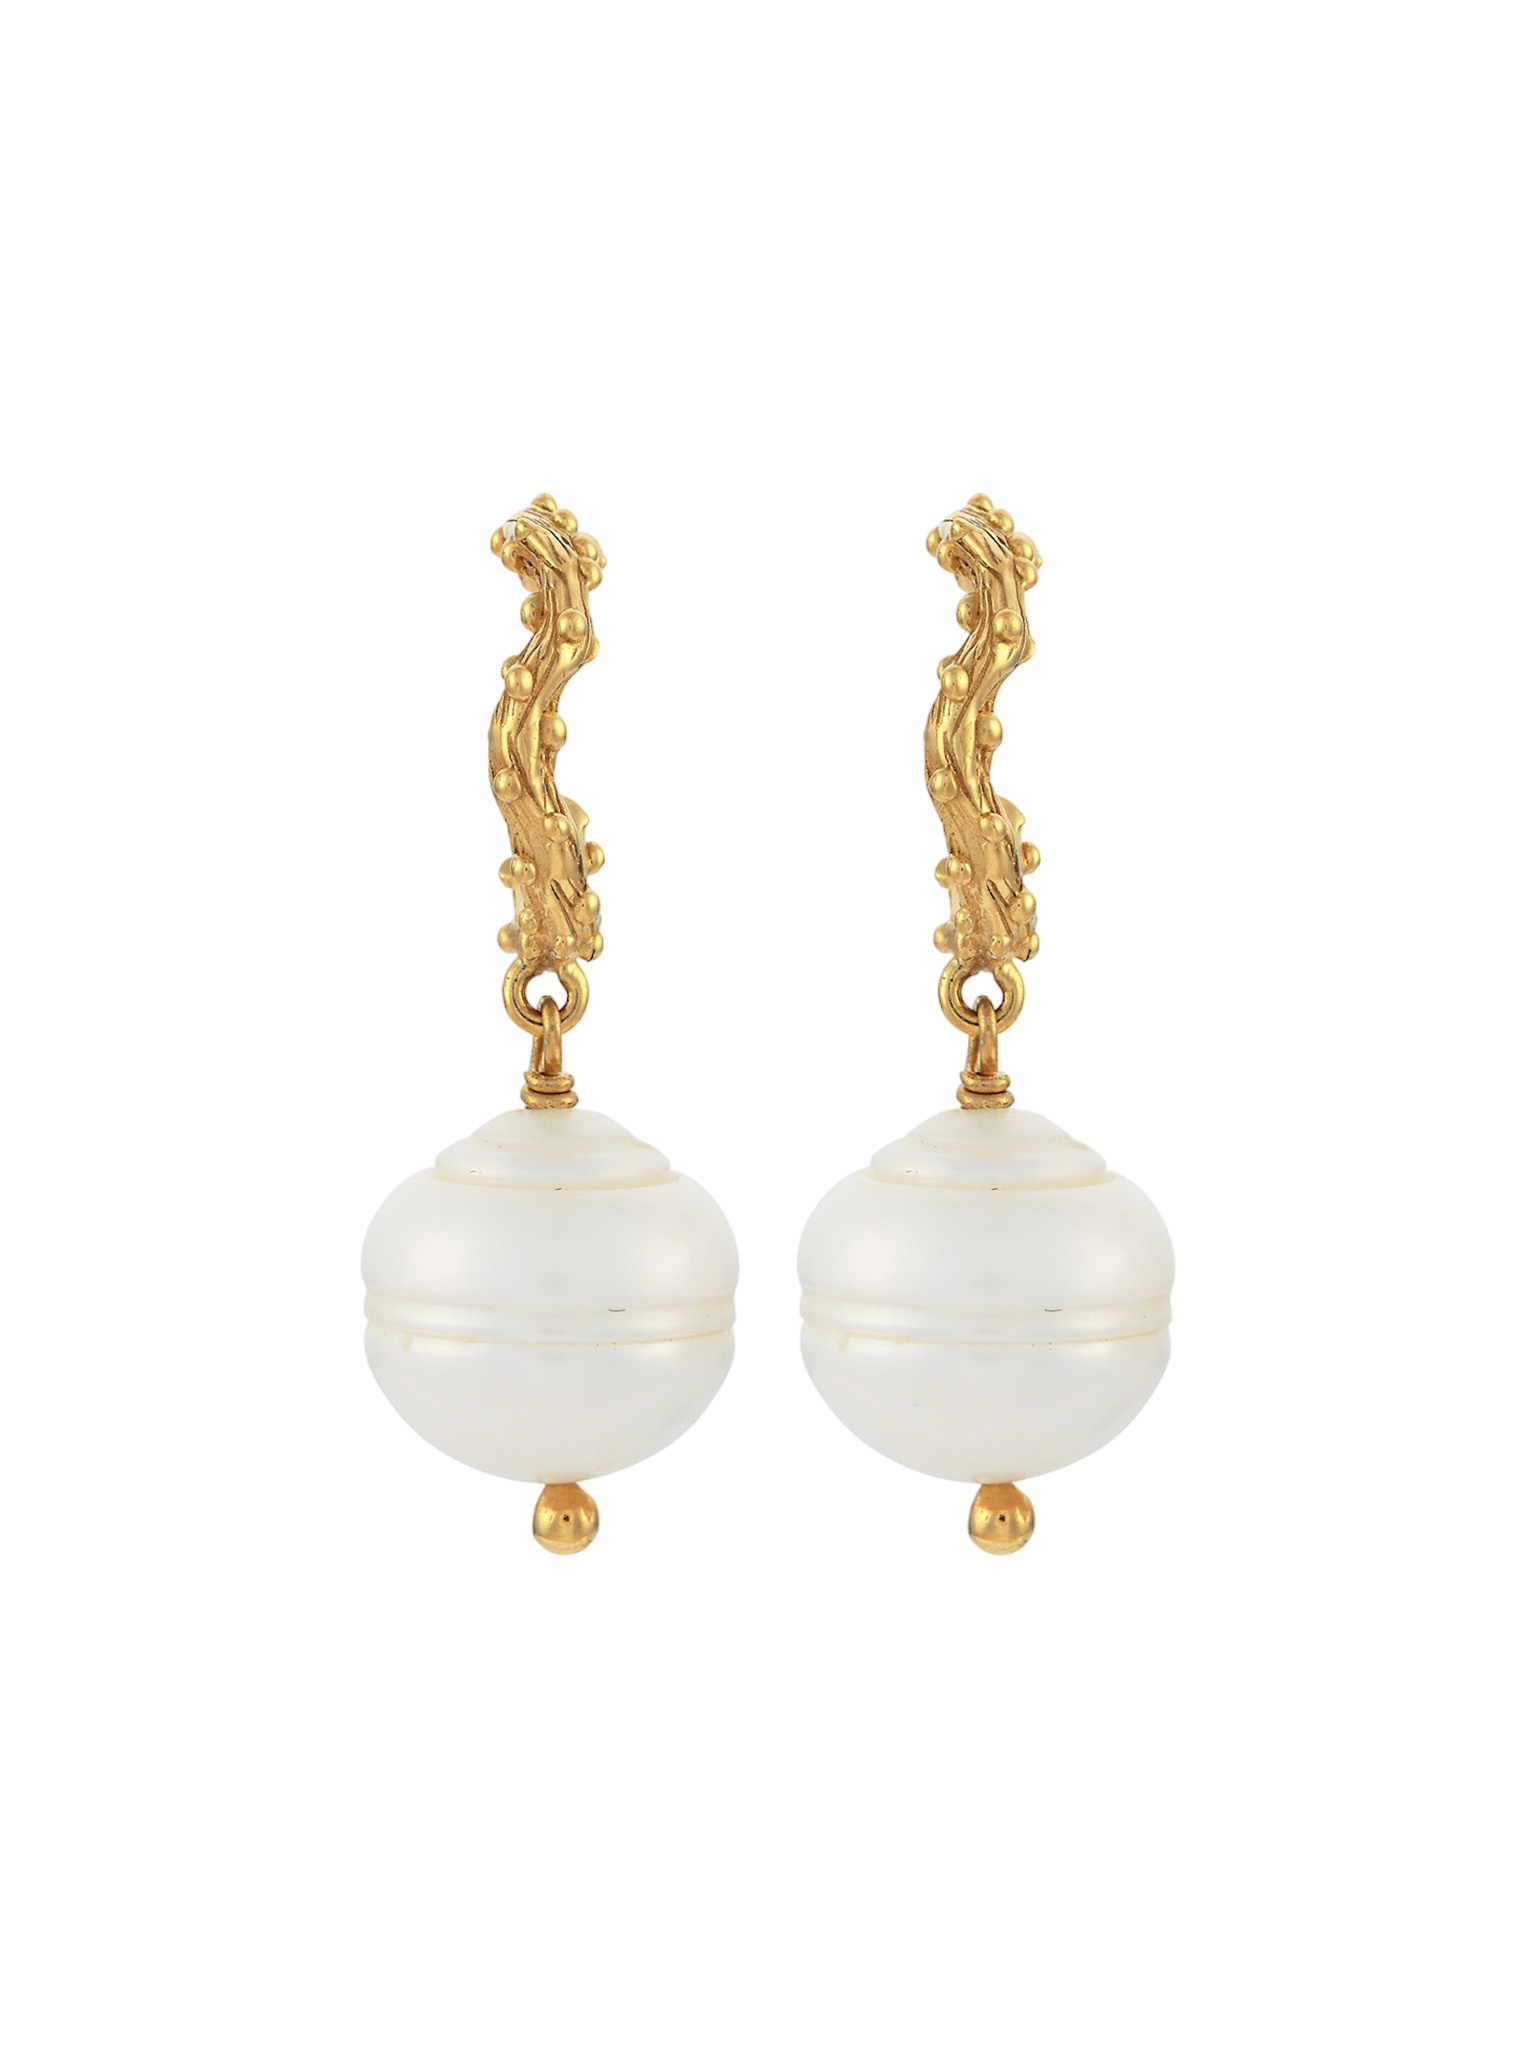 Asahan pearl earrings